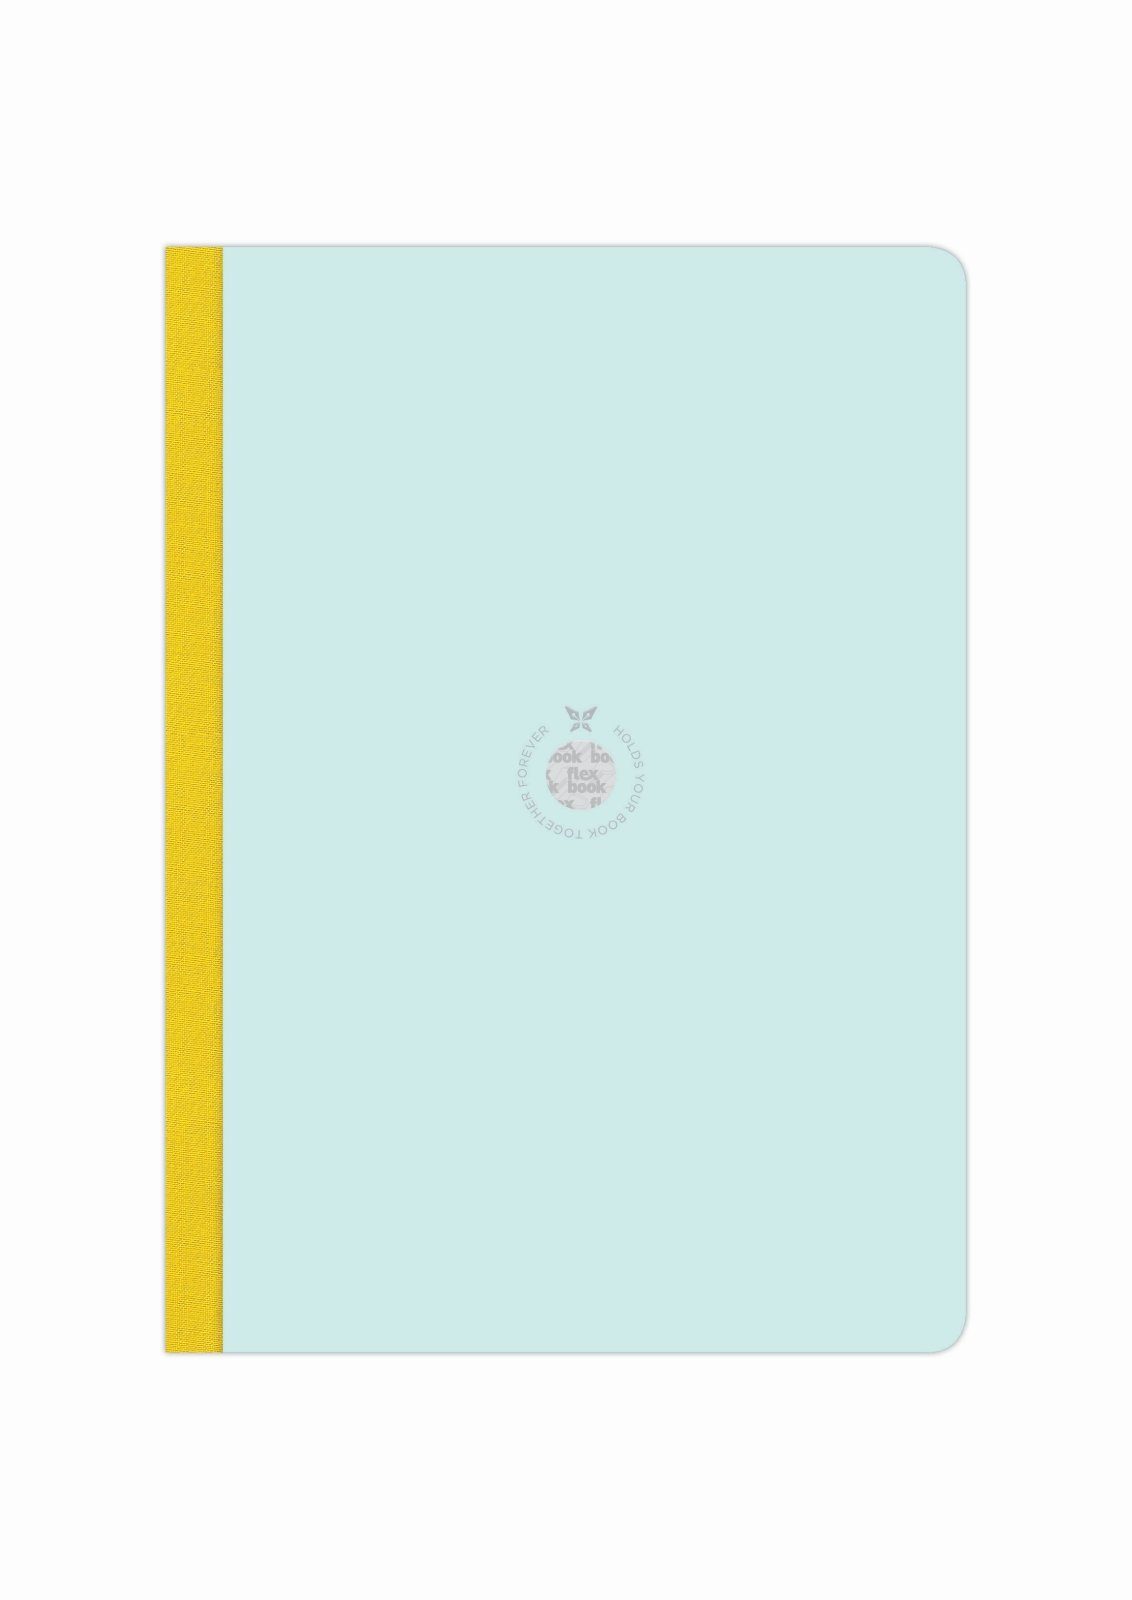 Flexbook Notizbuch Flexbook Smartbook Liniert 160 Seiten Ökopapiereinband viele Größen/Fa Hellblau-grün 21*29cm